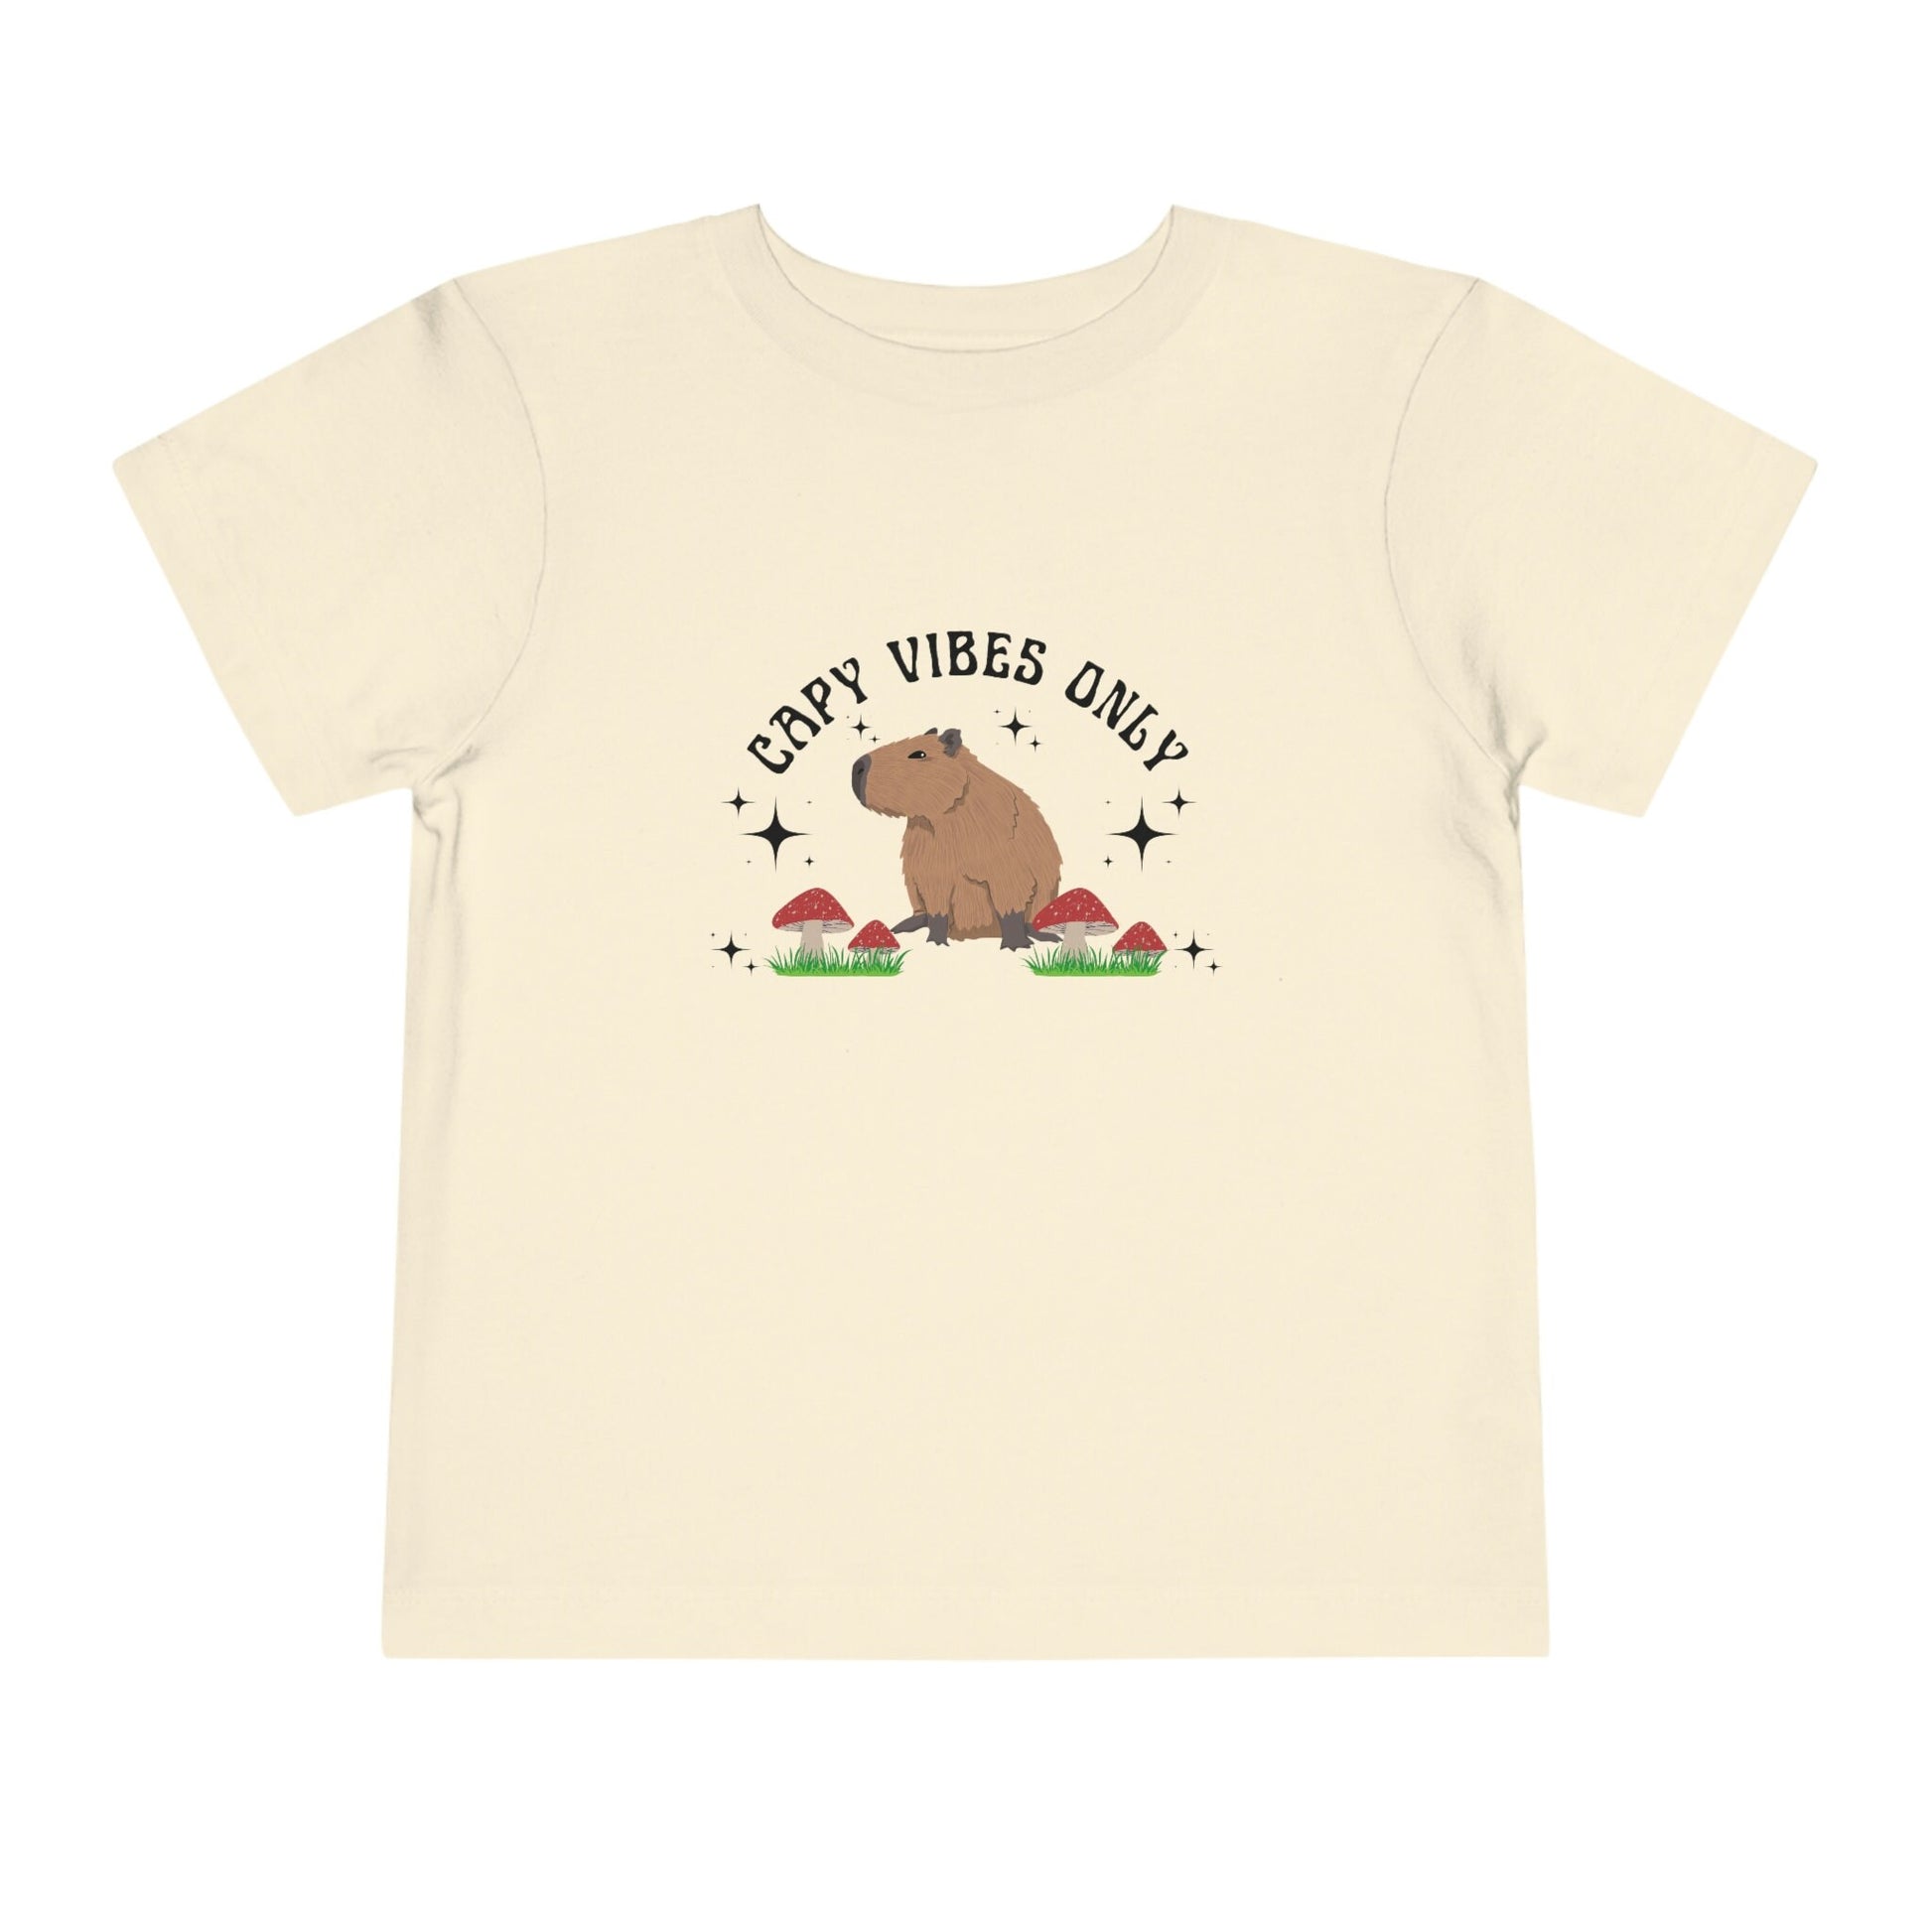 Capybara Shirt For Kids Retro Toddler Mushroom Shirt Cottagecore Clothes Capy Vibes Capybara Gift Kids Youth Capybara Shirt Capy Shirt Girl